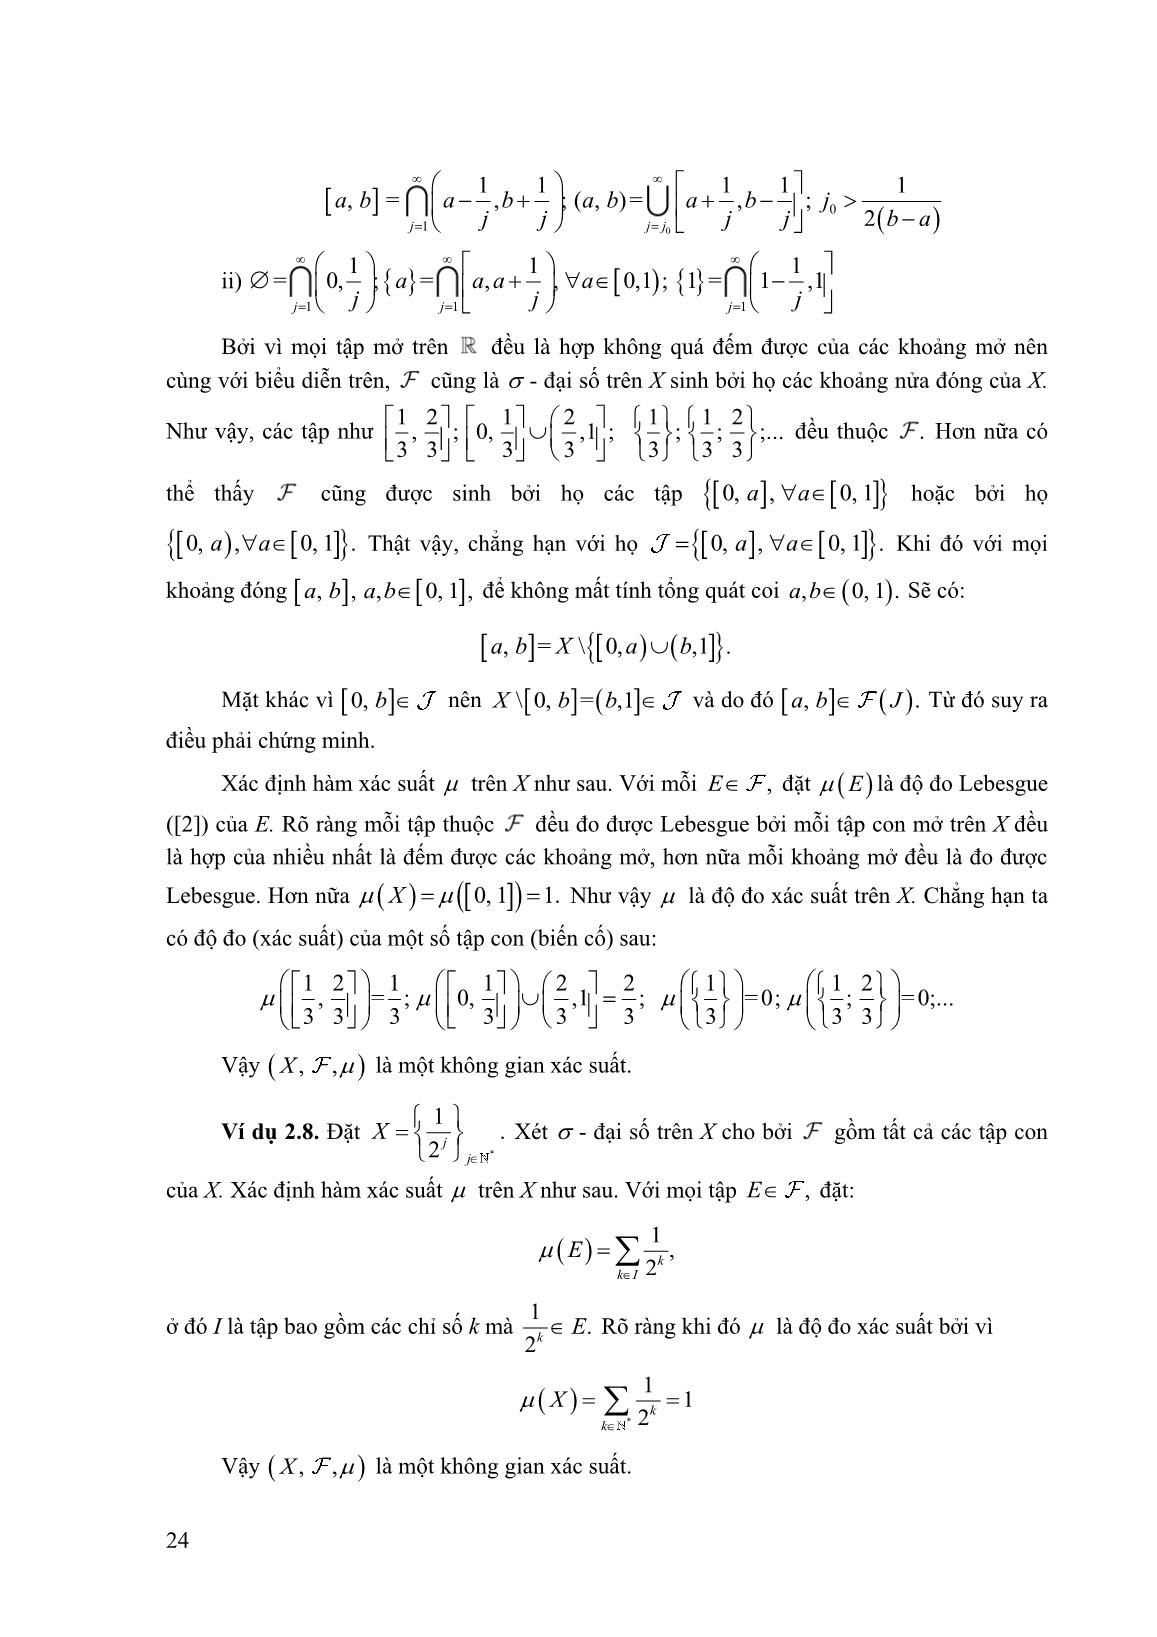 Một số không gian xác suất trên R trang 3